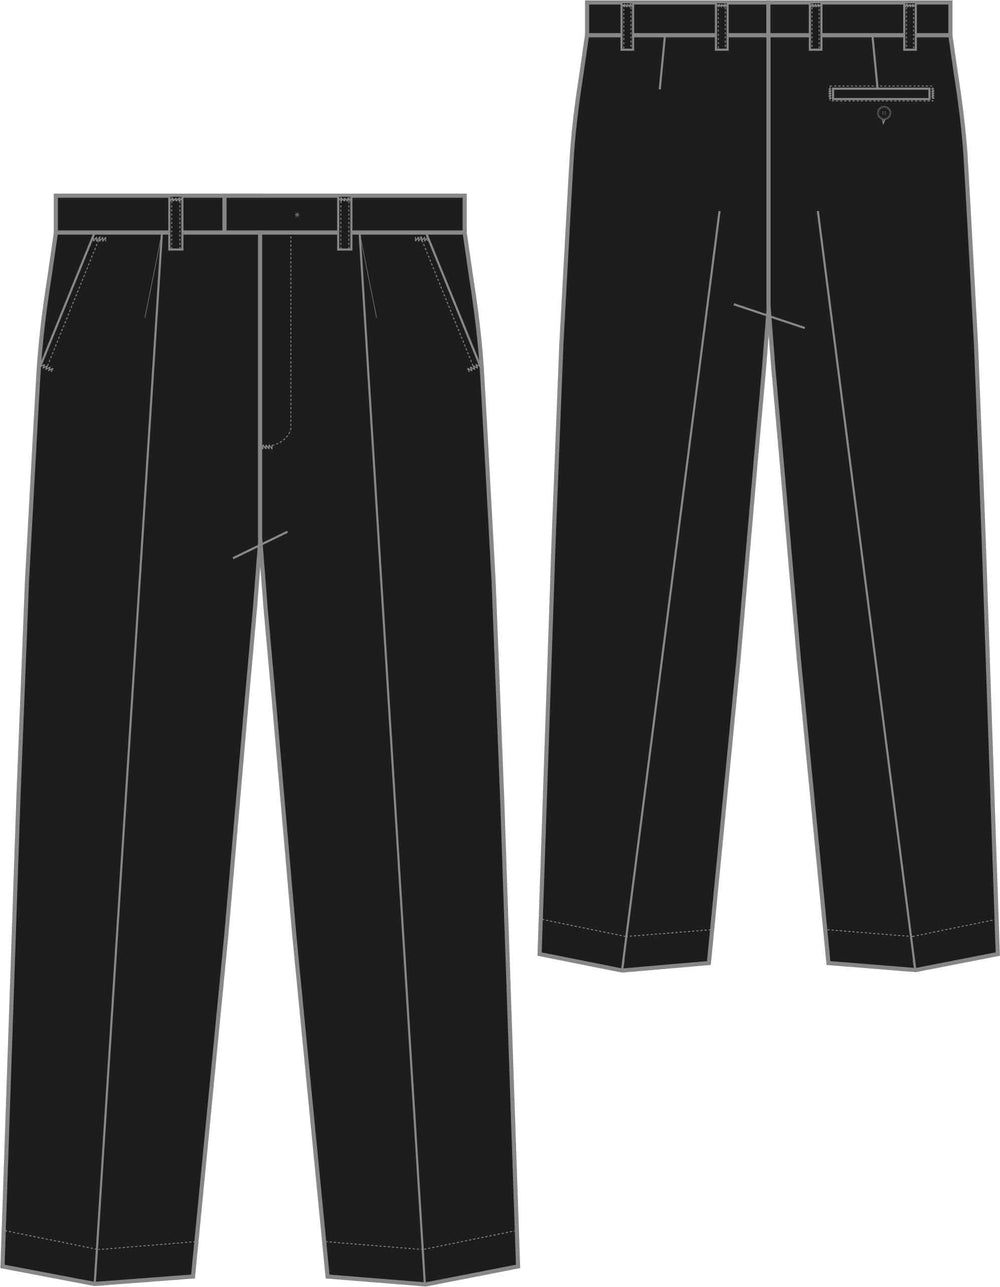 Perinteiset miesten mustat suorat housut vekeillä. Yksityiskohtina vyölenkit, sivutaskut ja takatasku nappikiinnityksellä. 